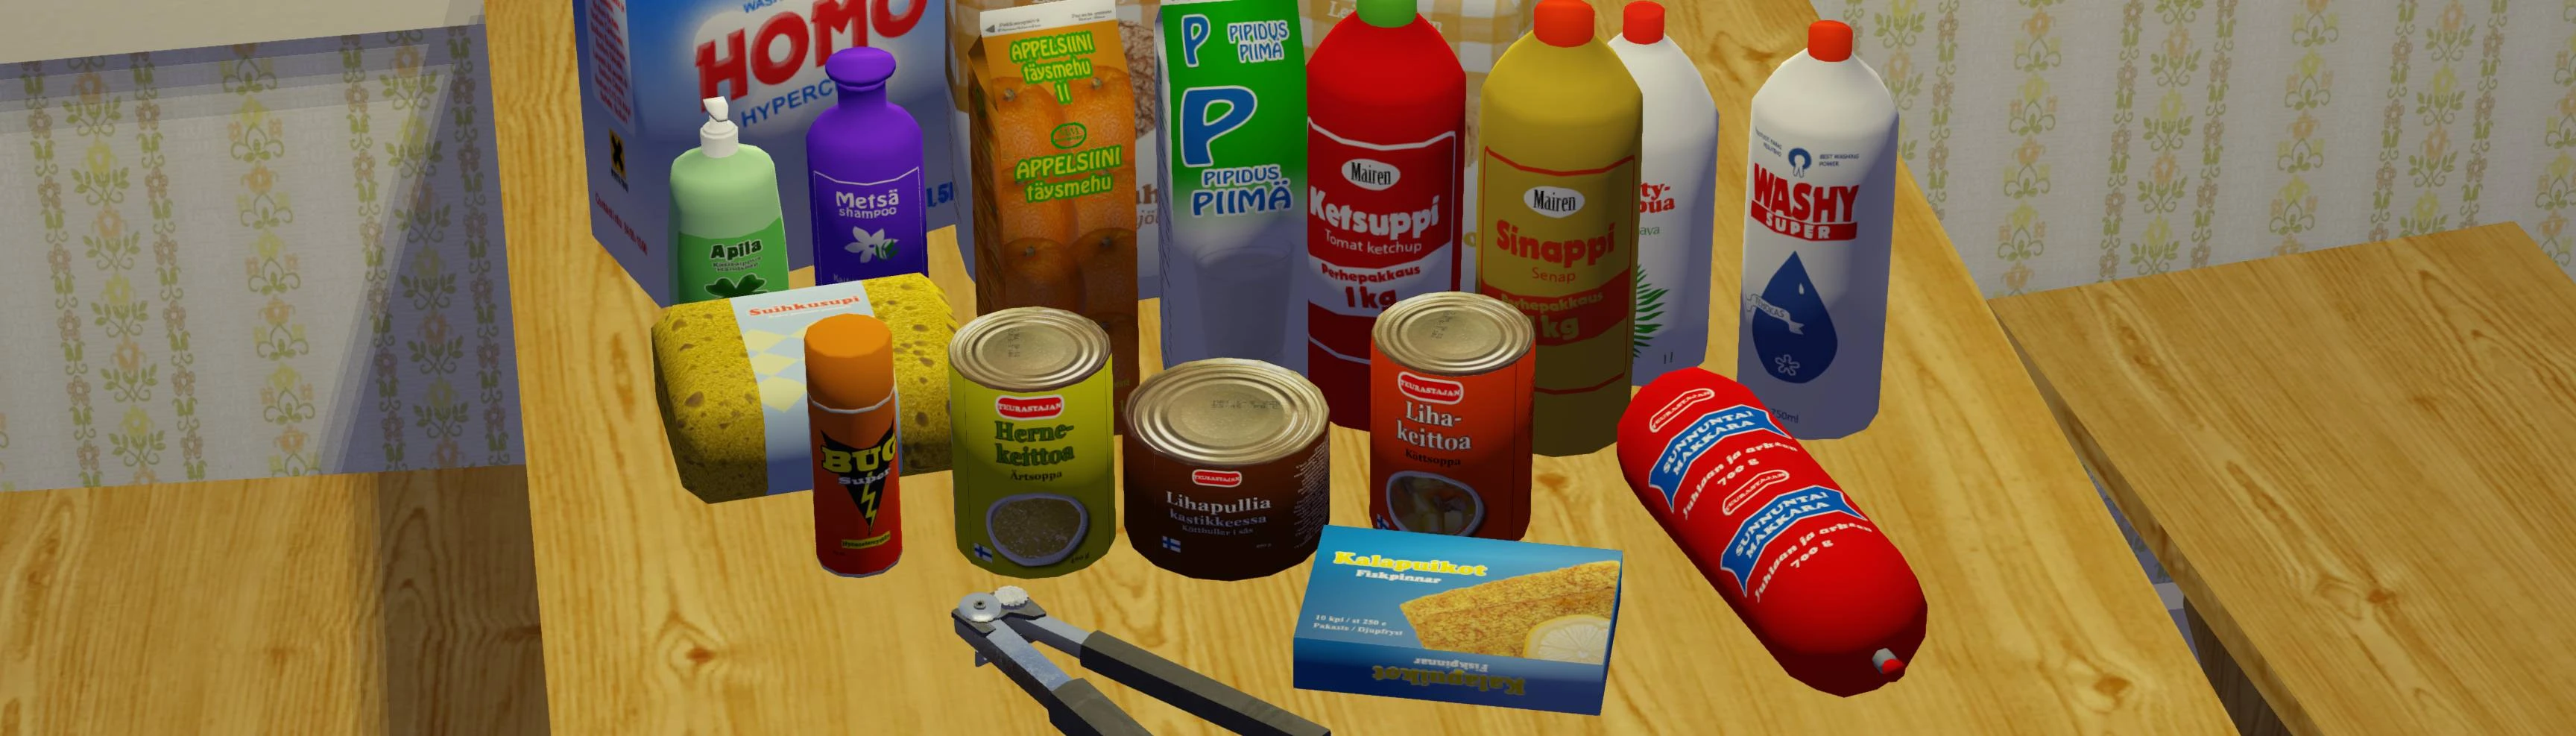 Novo Mod para The Sims 4 Expande o Catálogo do Modo Compra